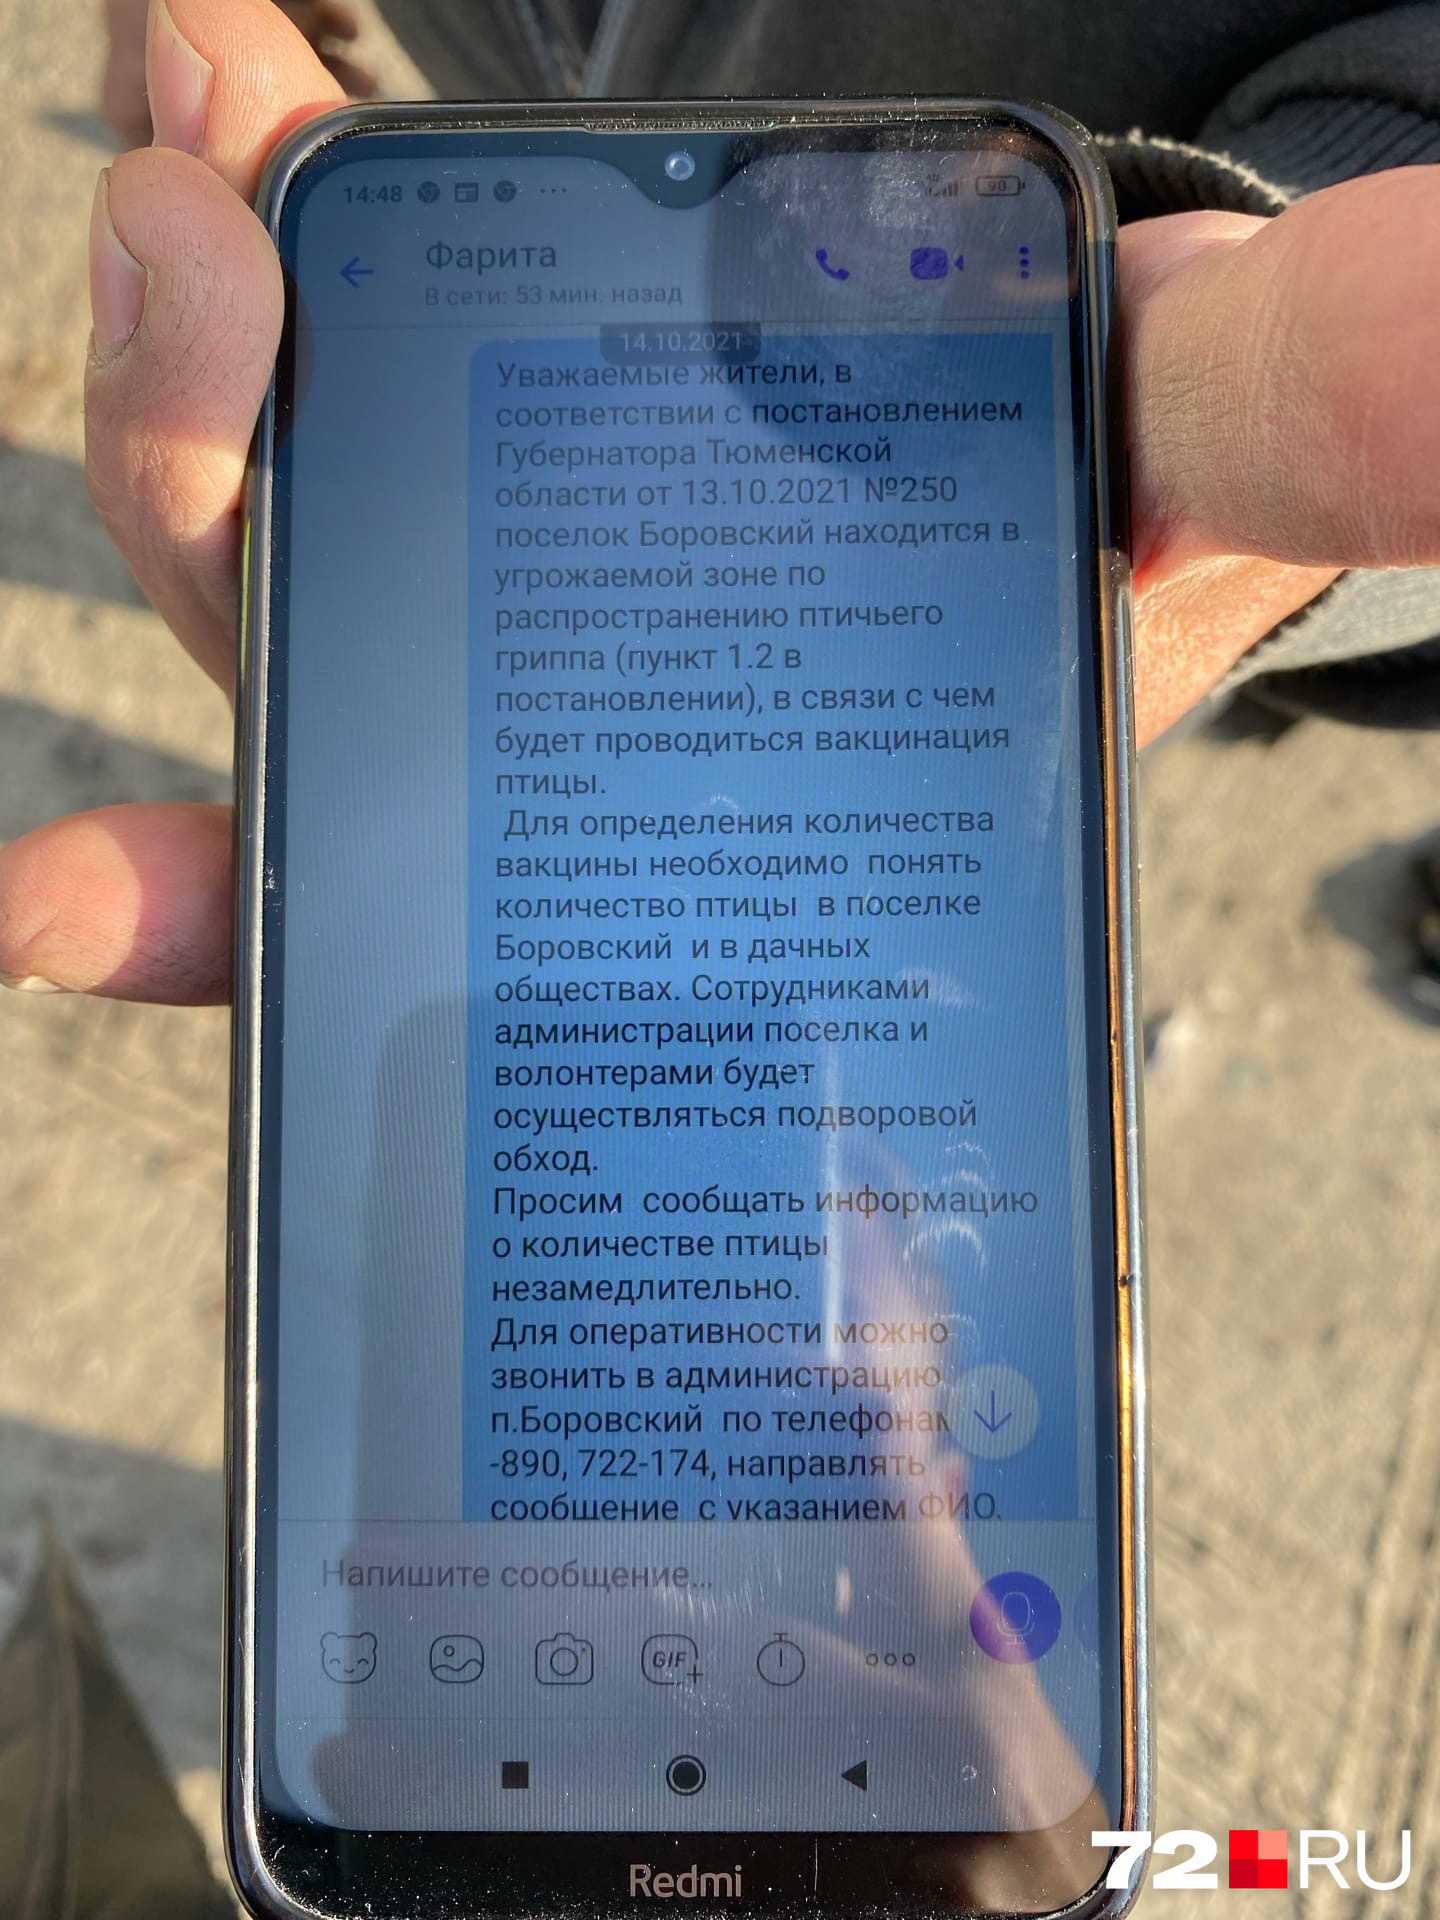 Такие сообщения представители боровской власти рассылали жителям 